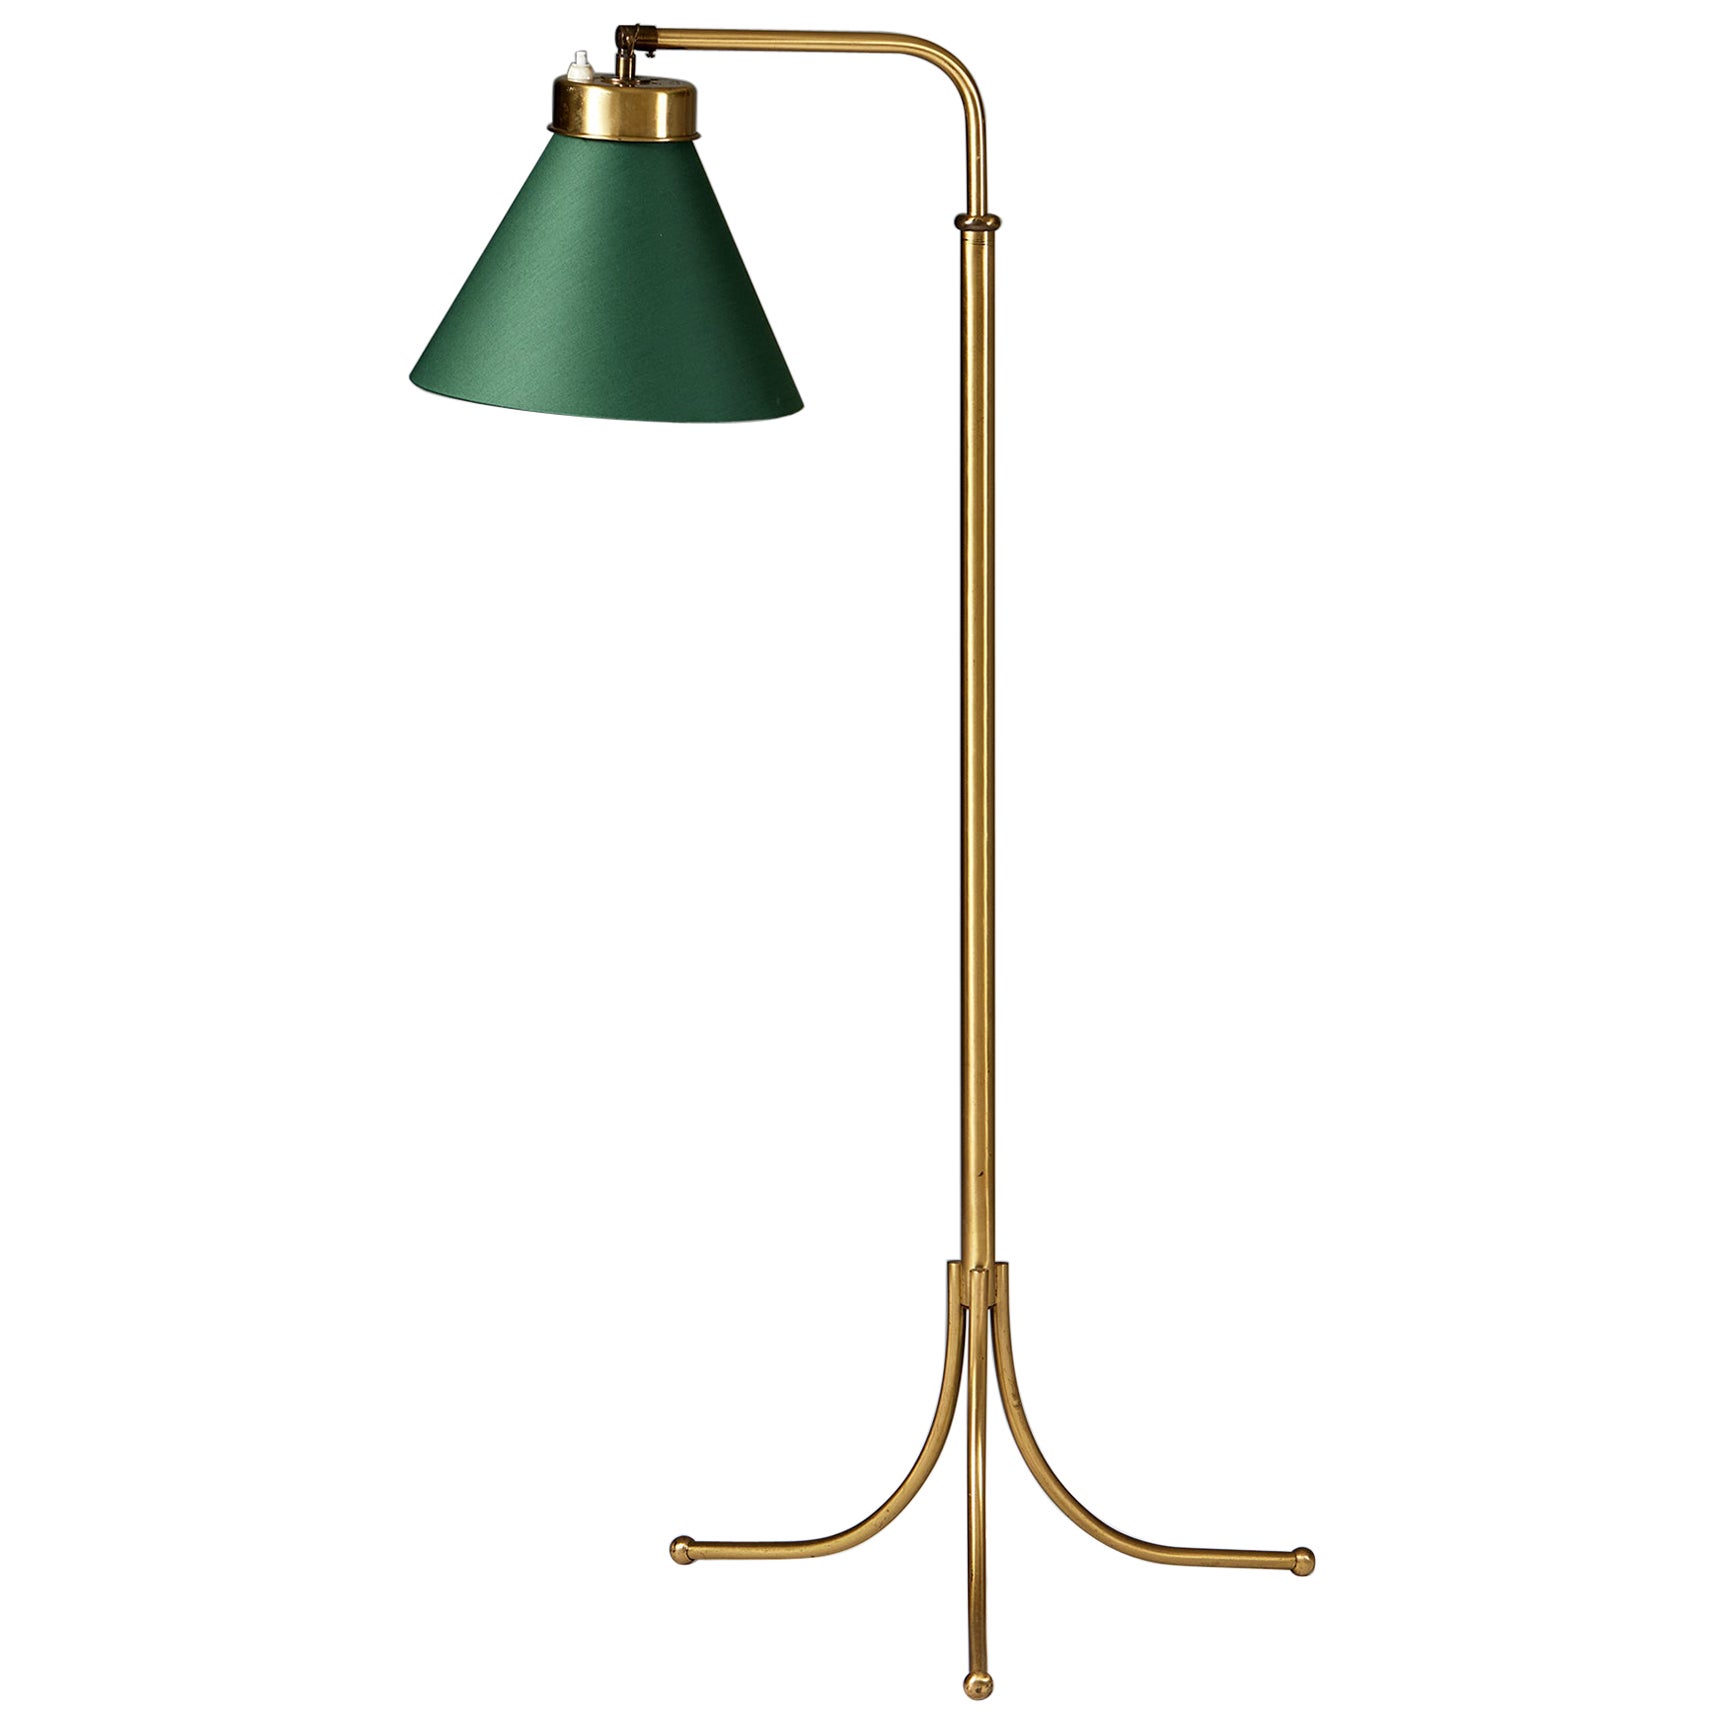 Floor Lamp Model 1842 Designed by Josef Frank for Svenskt Tenn, Sweden, 1932